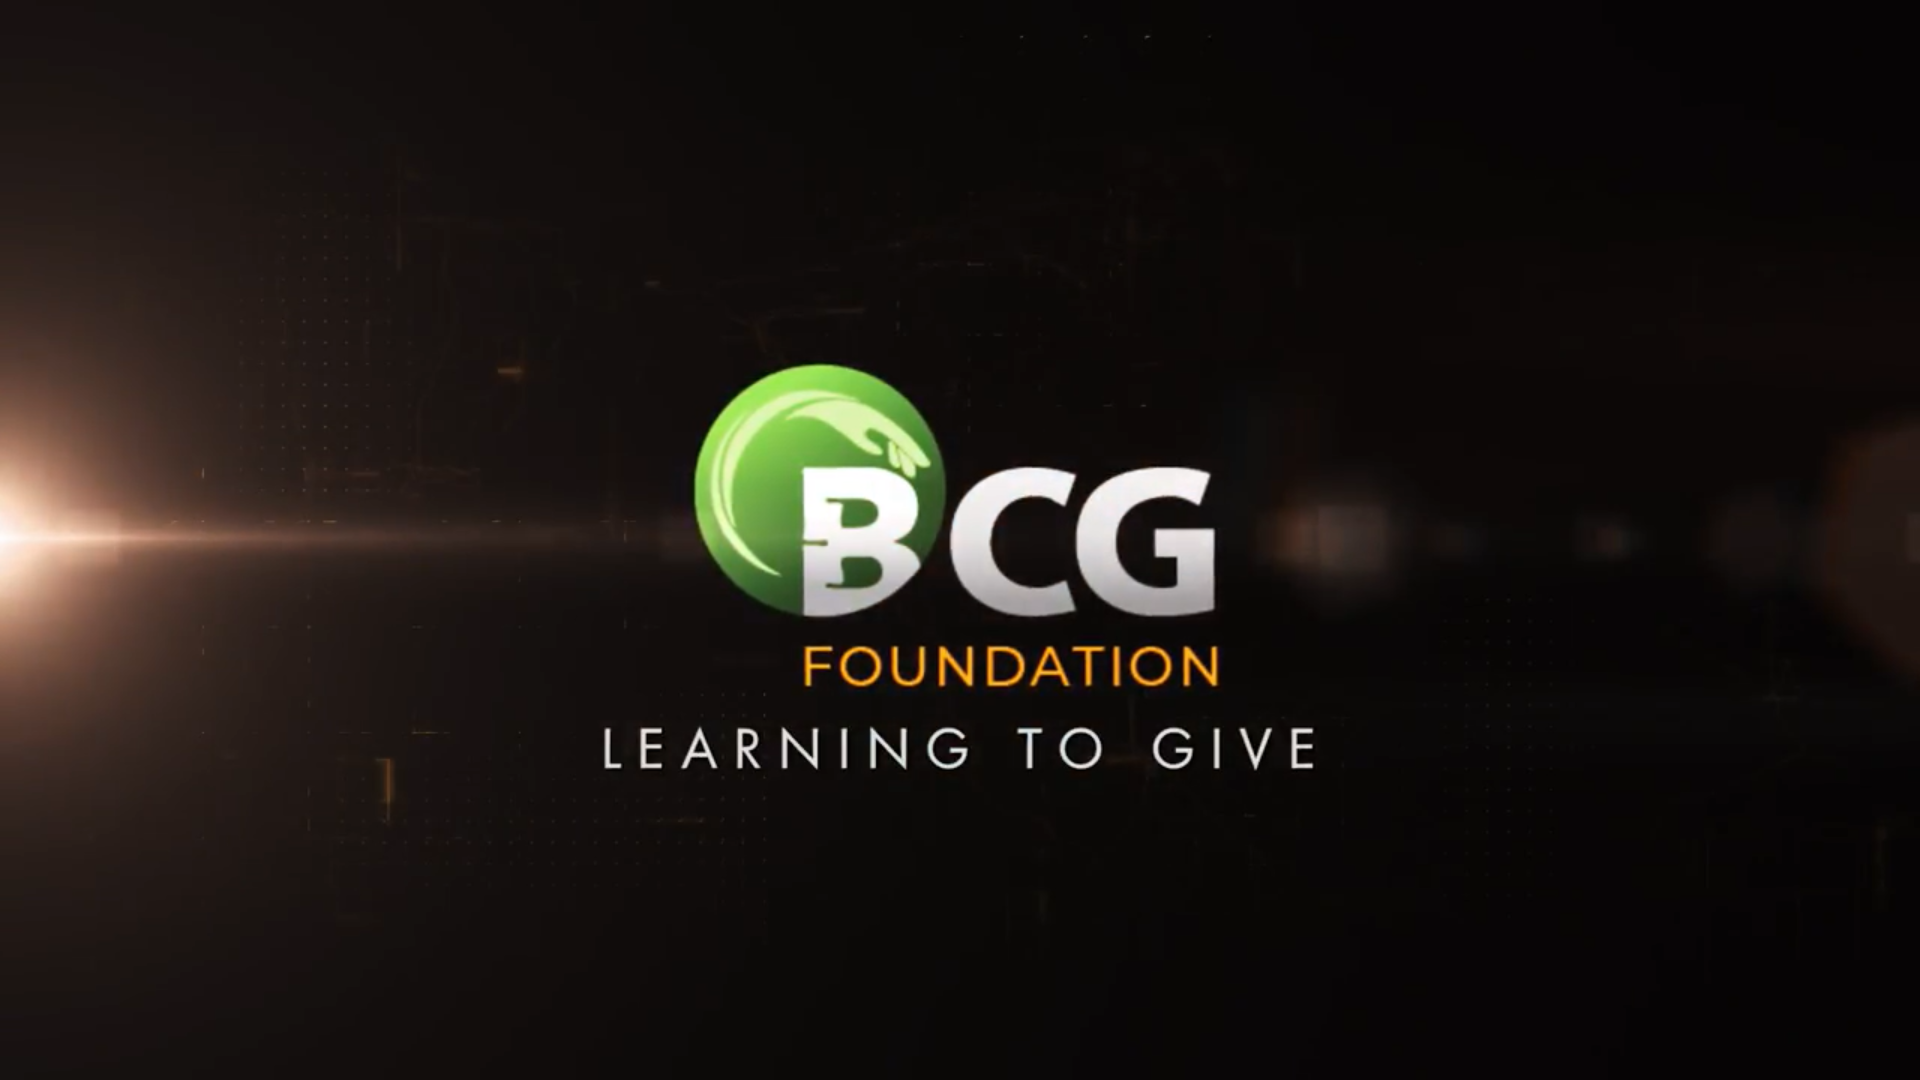 Bamboo Capital ra mắt quỹ BCG Foundation - Vì sứ mệnh đồng hành cùng cộng đồng